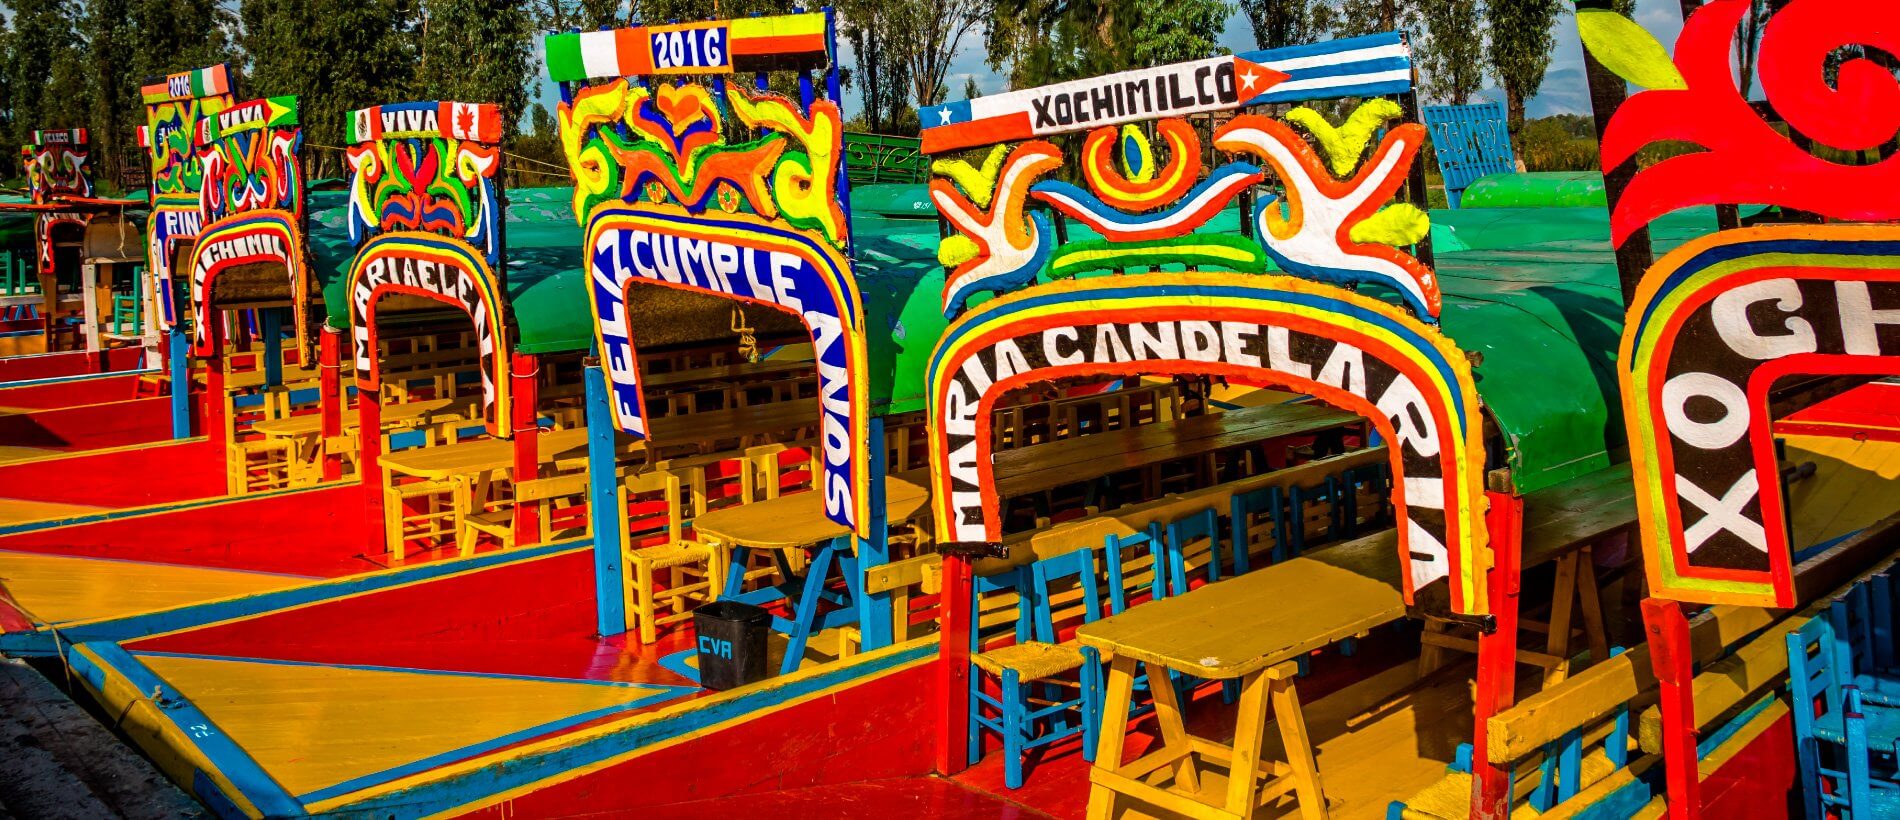 Magic Xochimilco Tour & Coyoacan